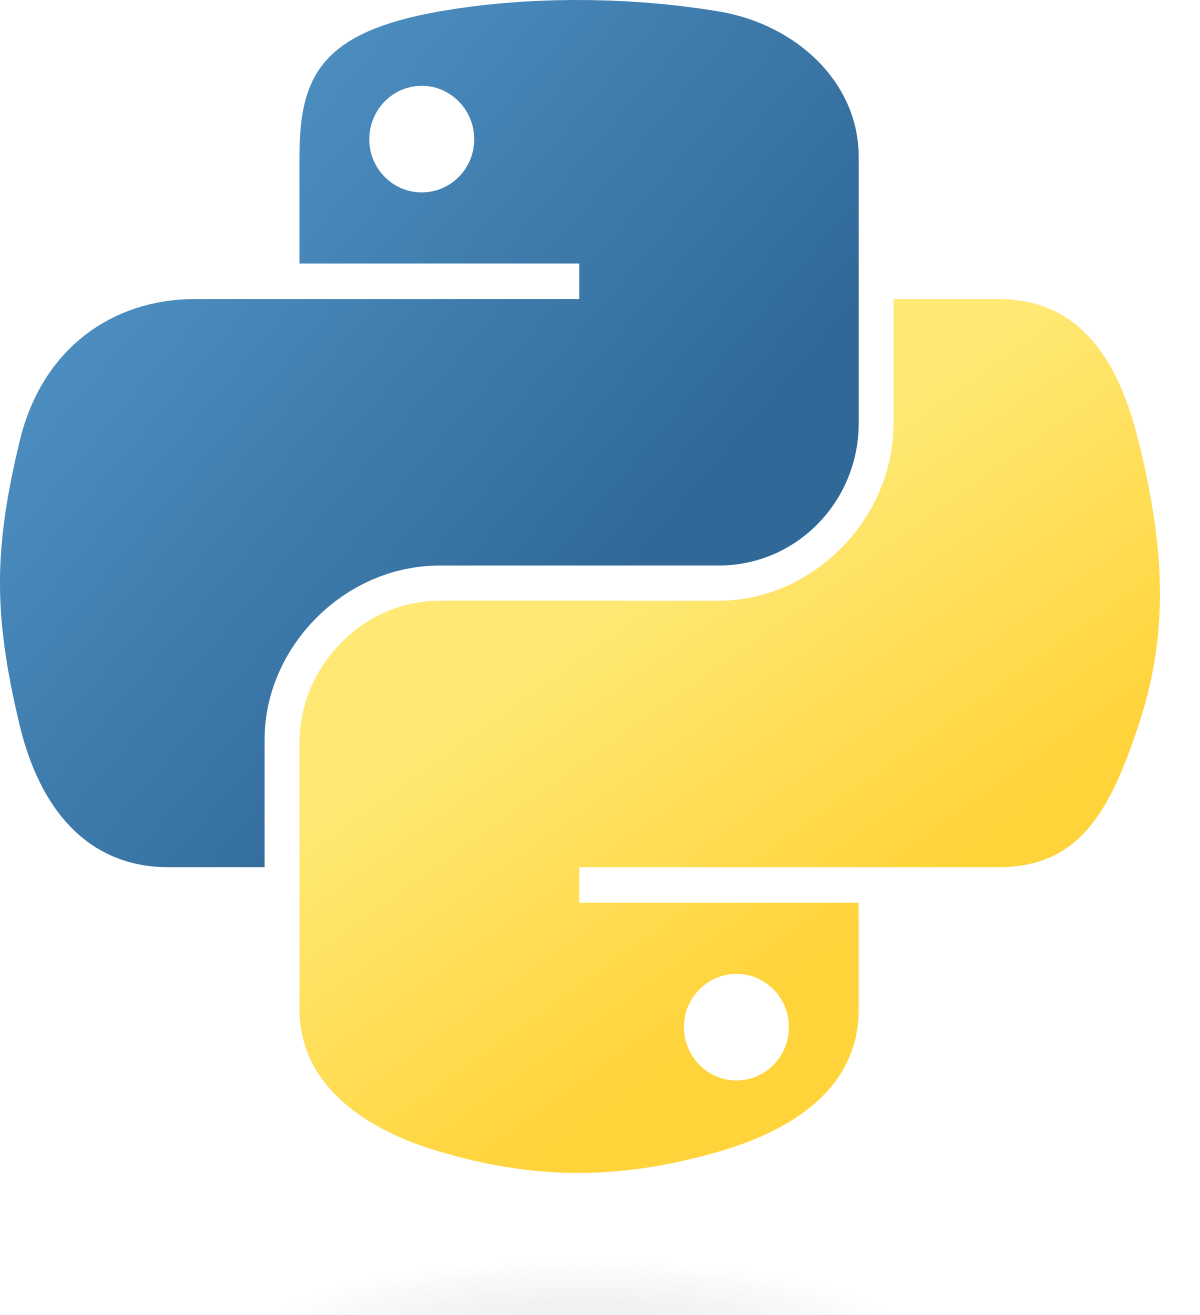 Python Basics and Cheat Sheet